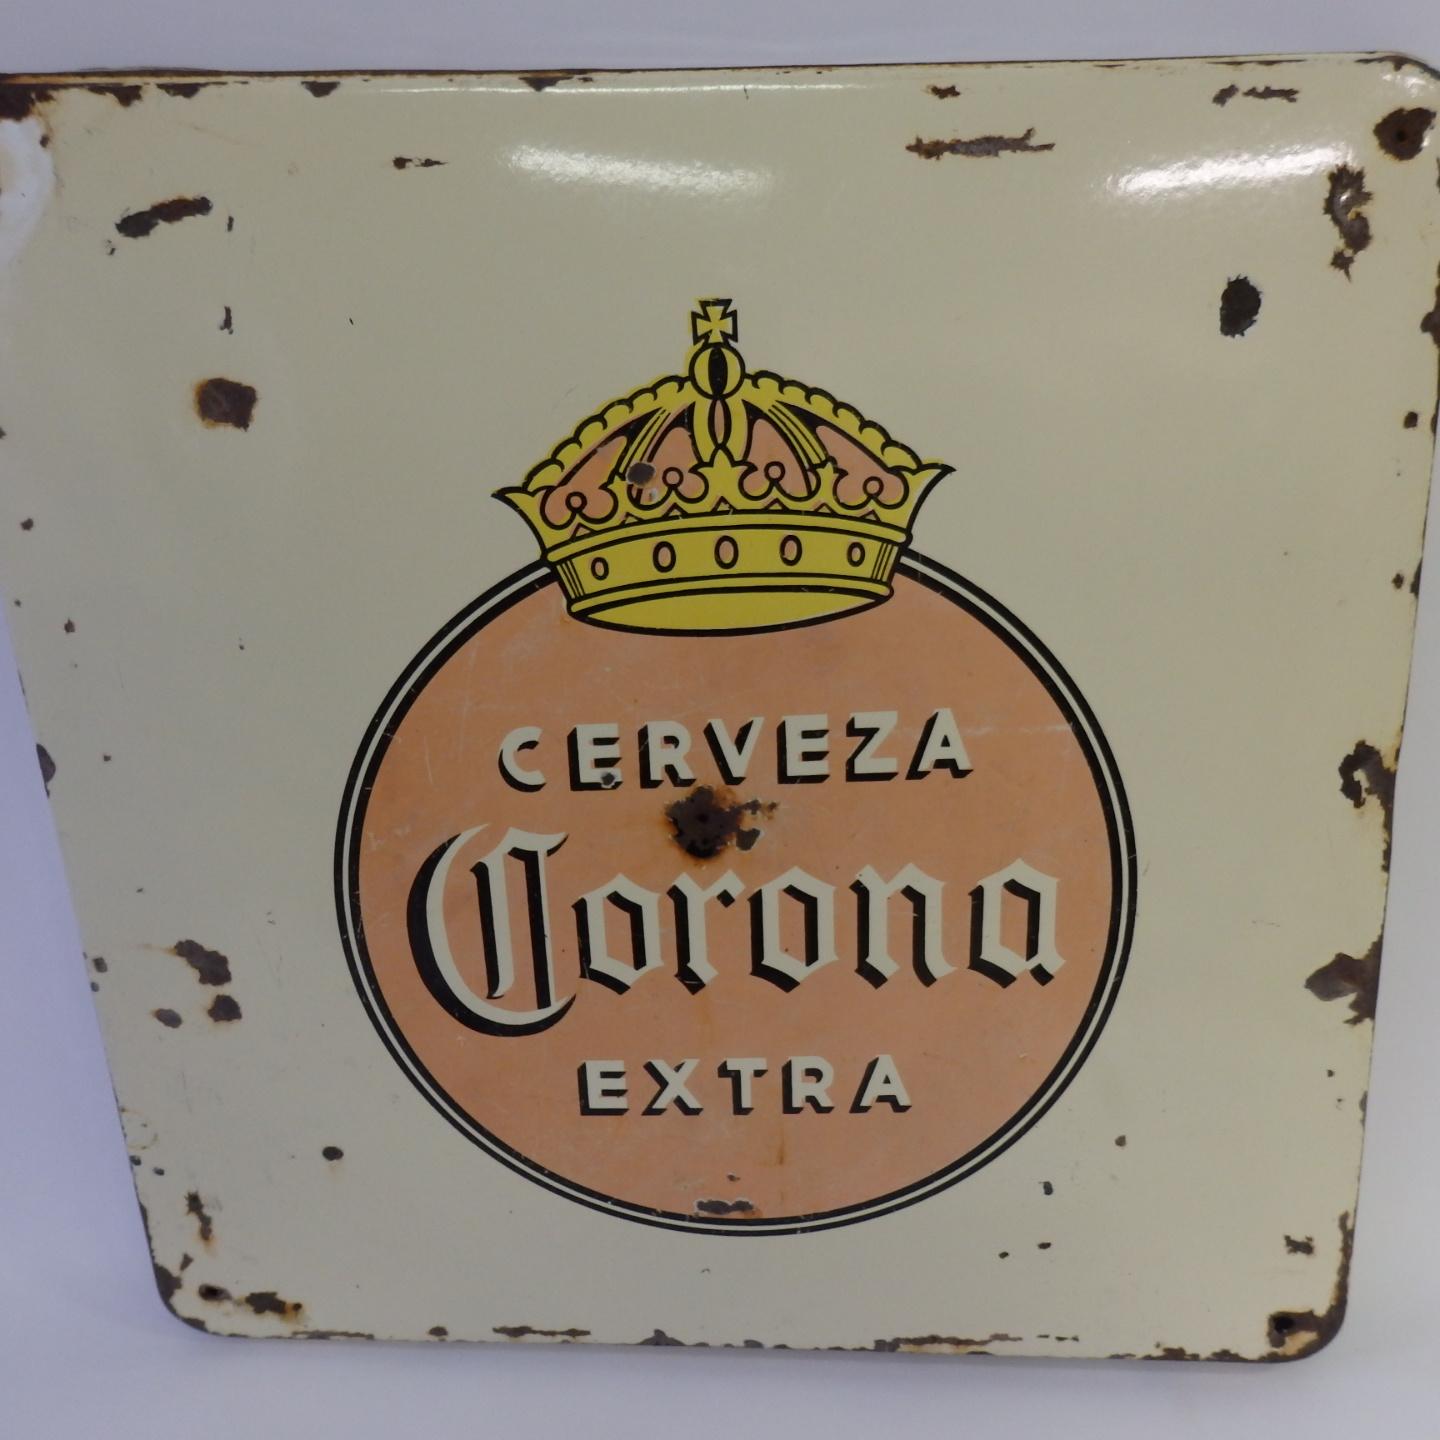 corona beer advertisement